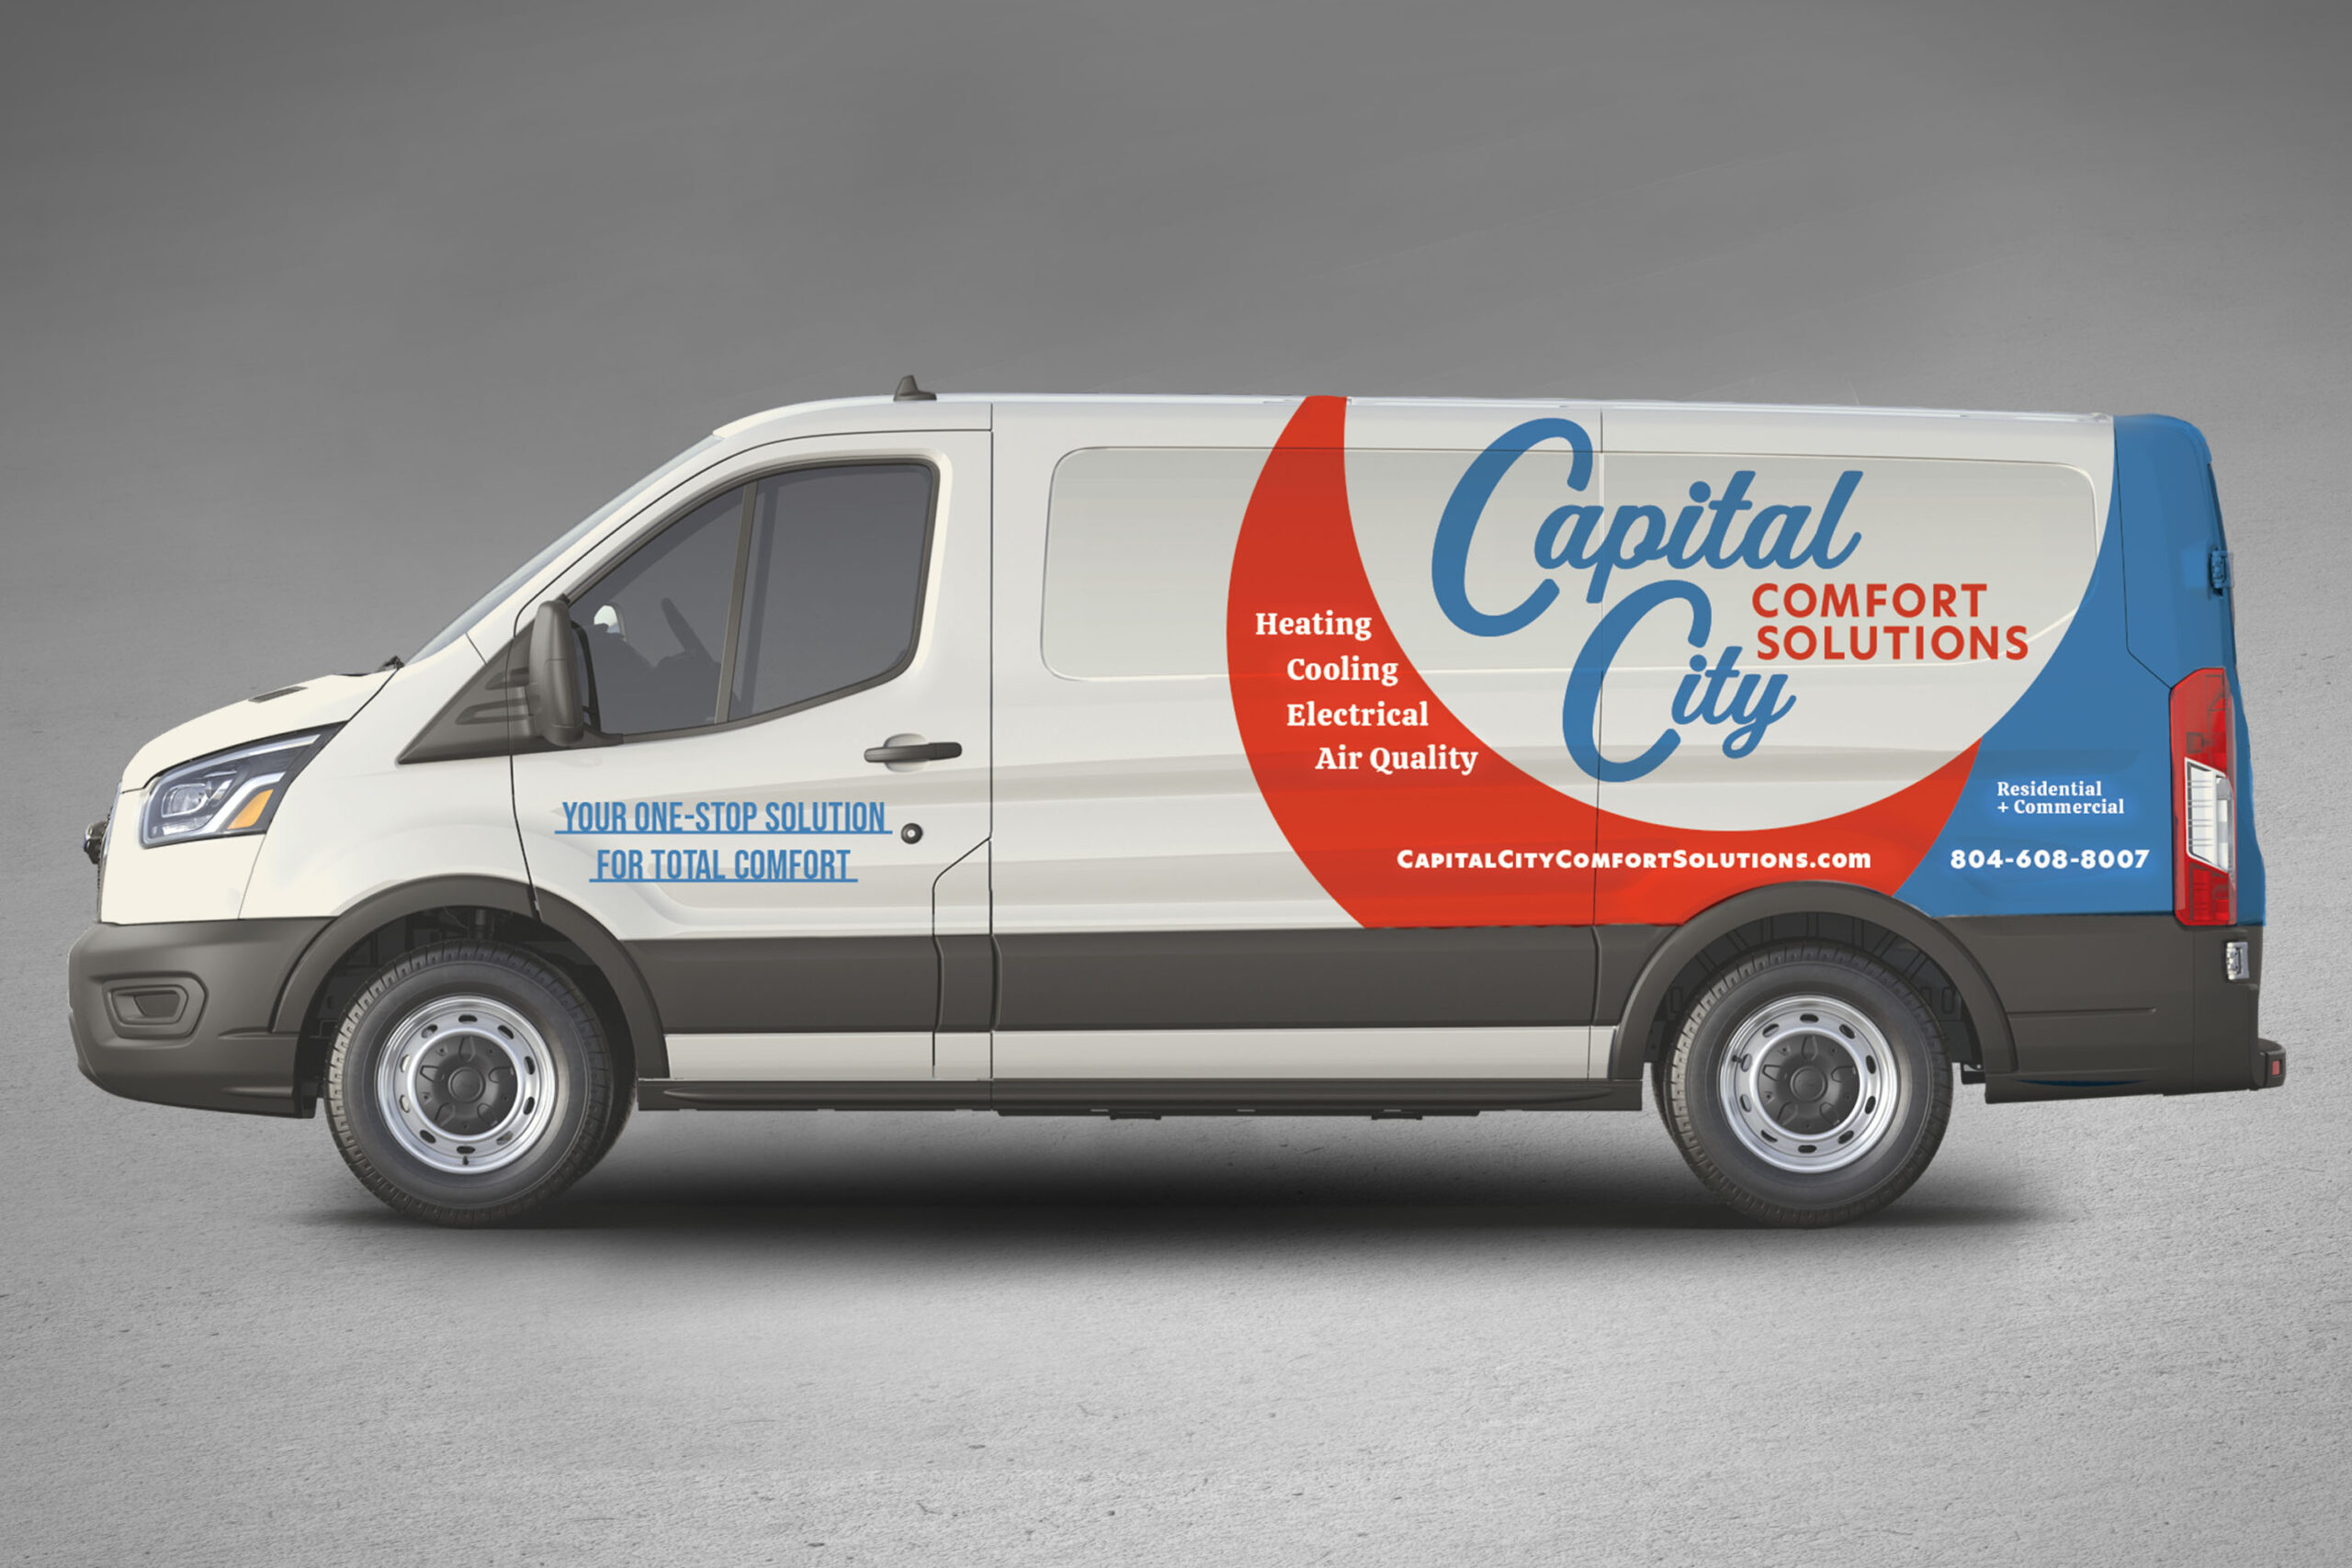 Capital City Comfort Solutions Truck Design